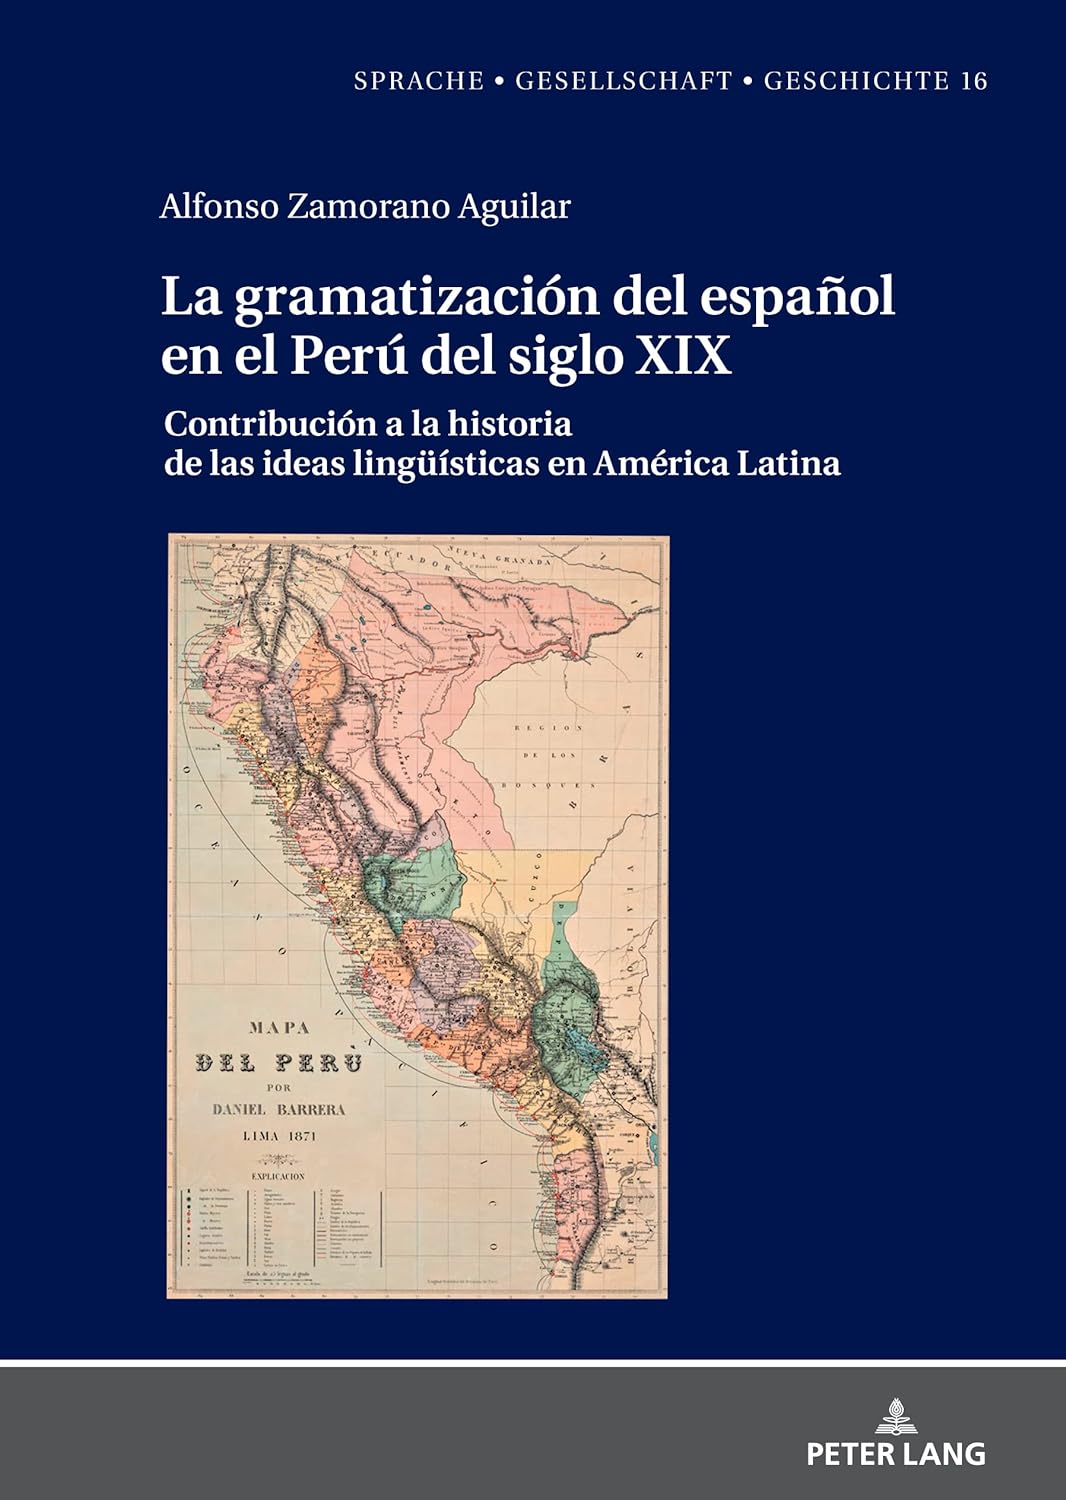 Imagen de portada del libro La gramatización del español en el Perú del Siglo XIX